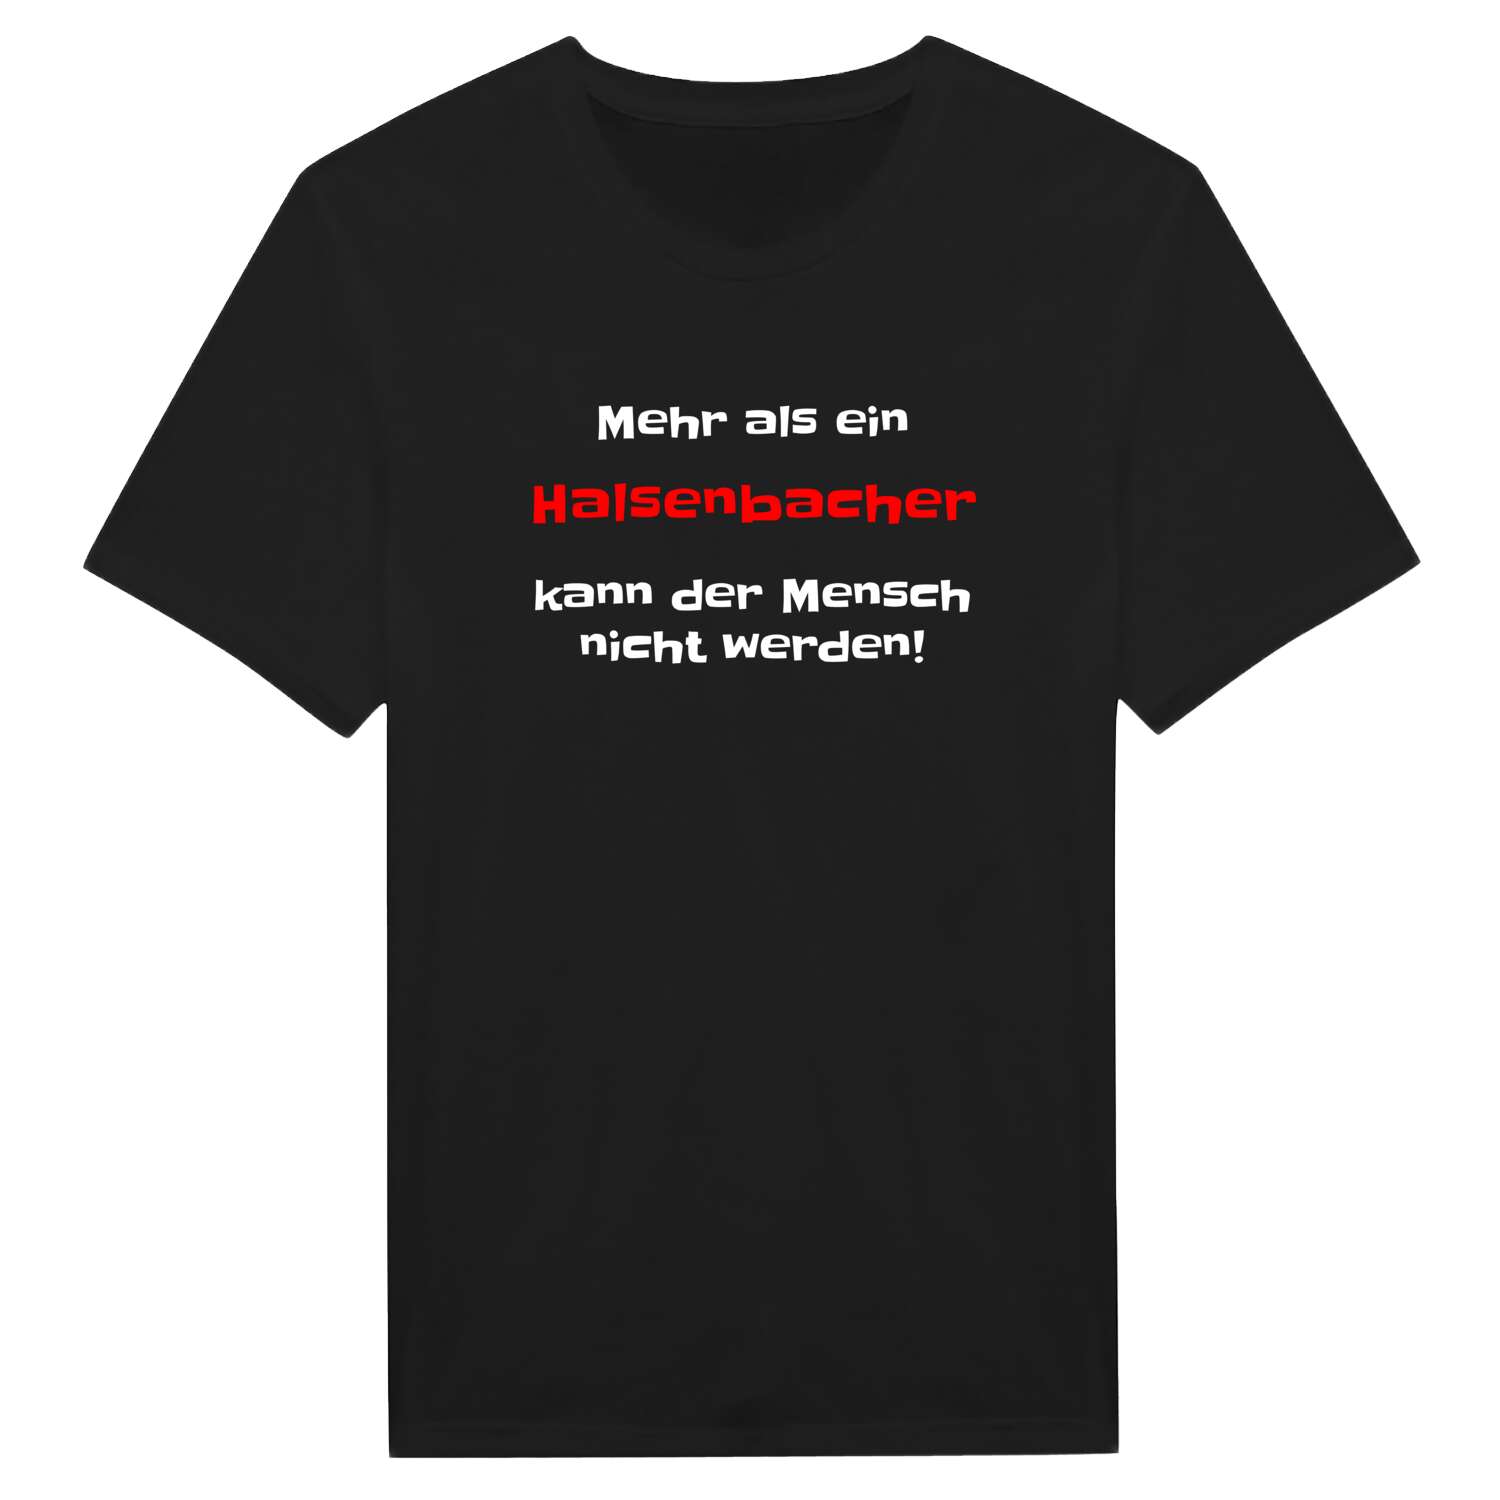 Halsenbach T-Shirt »Mehr als ein«